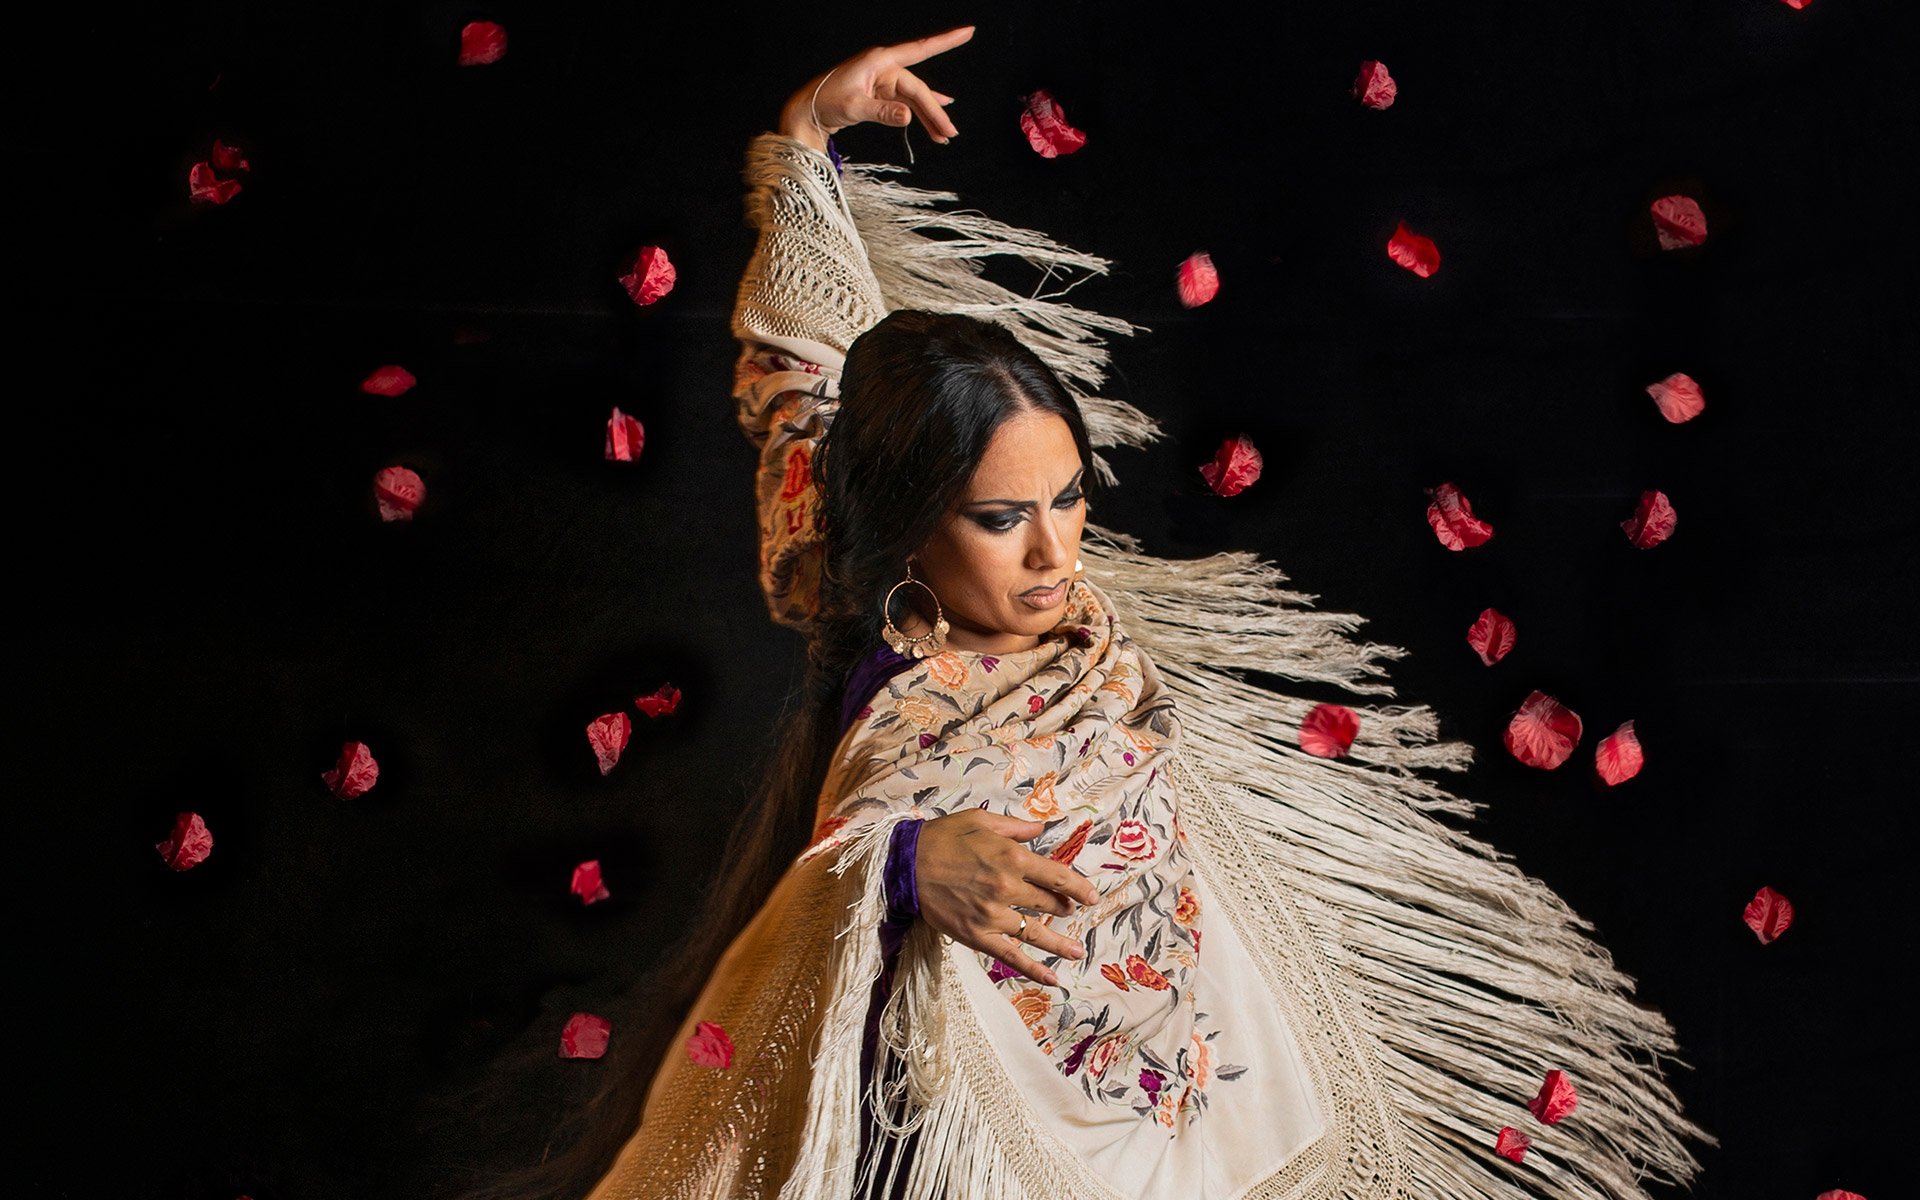 Get to know the Centro de Arte Flamenco Amor de Dios